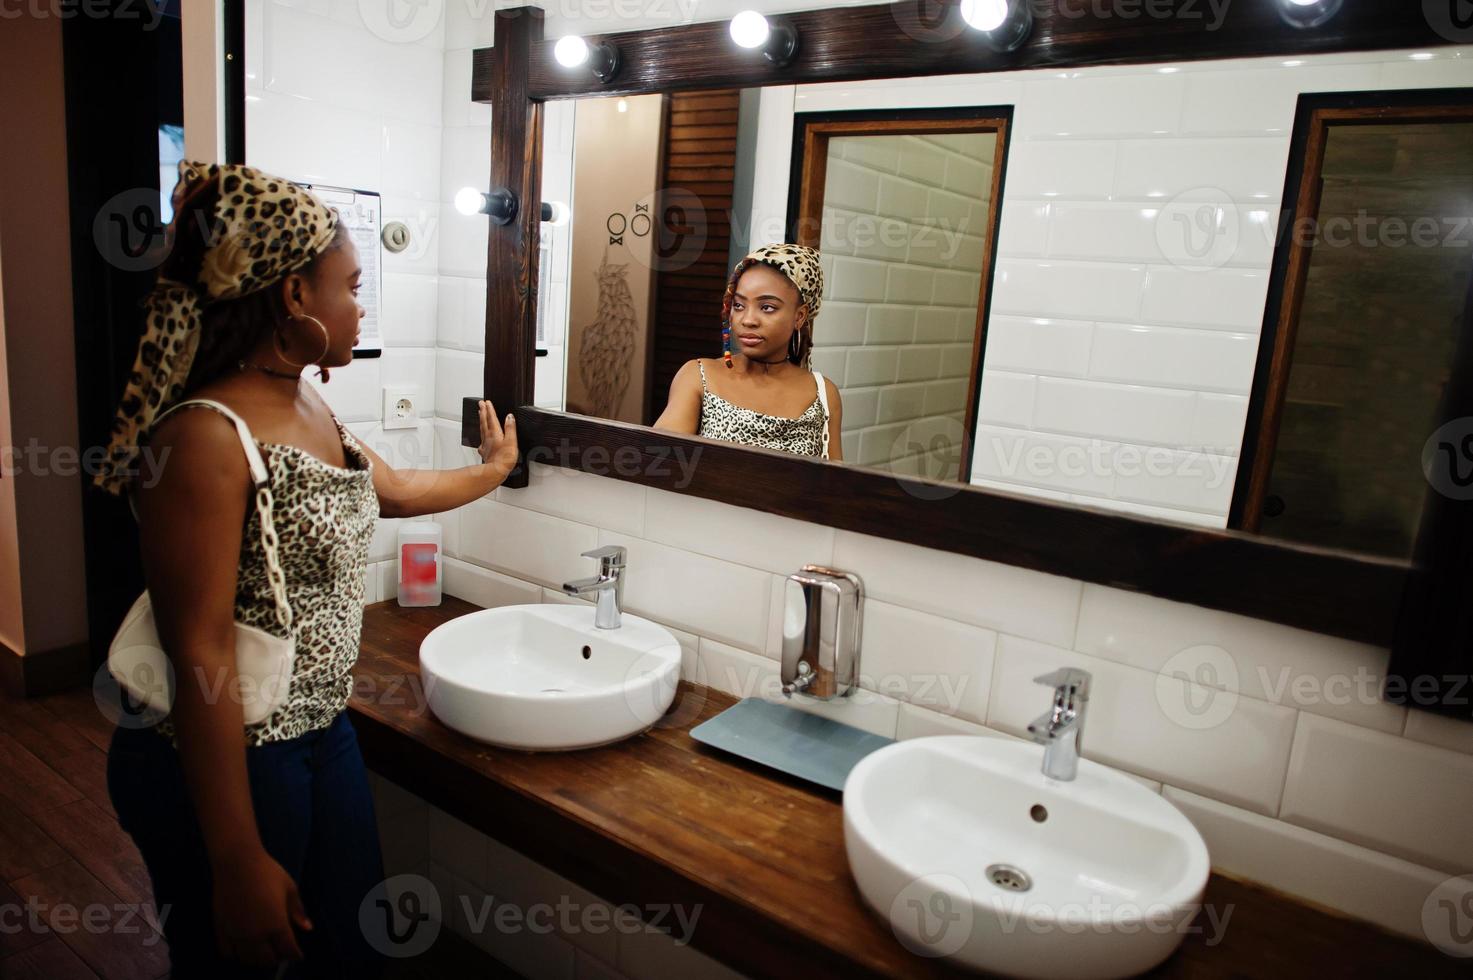 linda mulher afro-americana com dreadlocks com roupa de leopardo, olhando no espelho no wc cafe. linda jovem negra elegante legal interior. foto